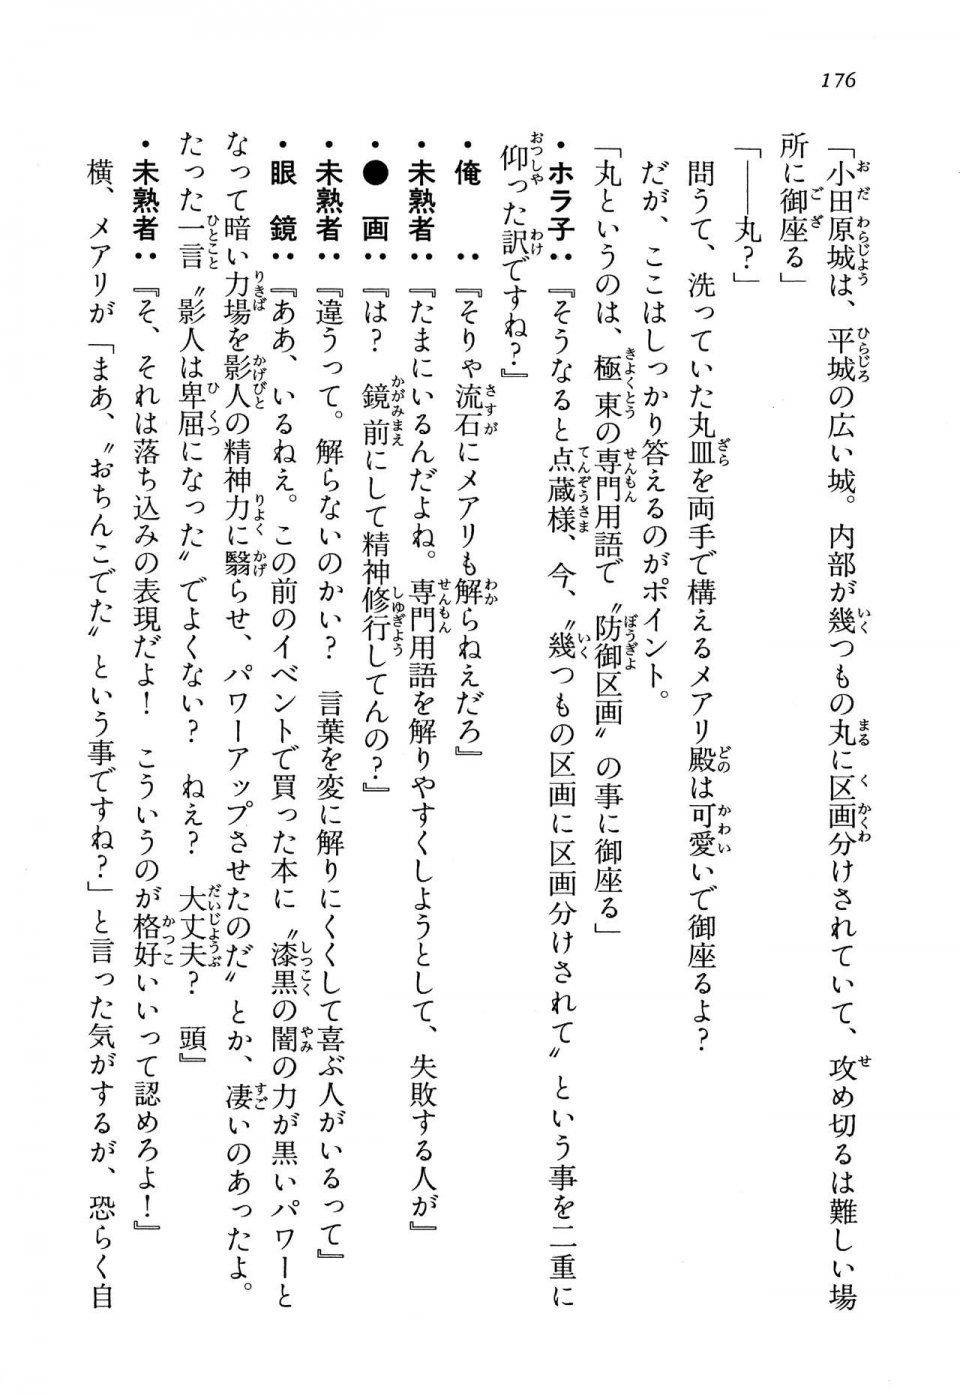 Kyoukai Senjou no Horizon LN Vol 13(6A) - Photo #176